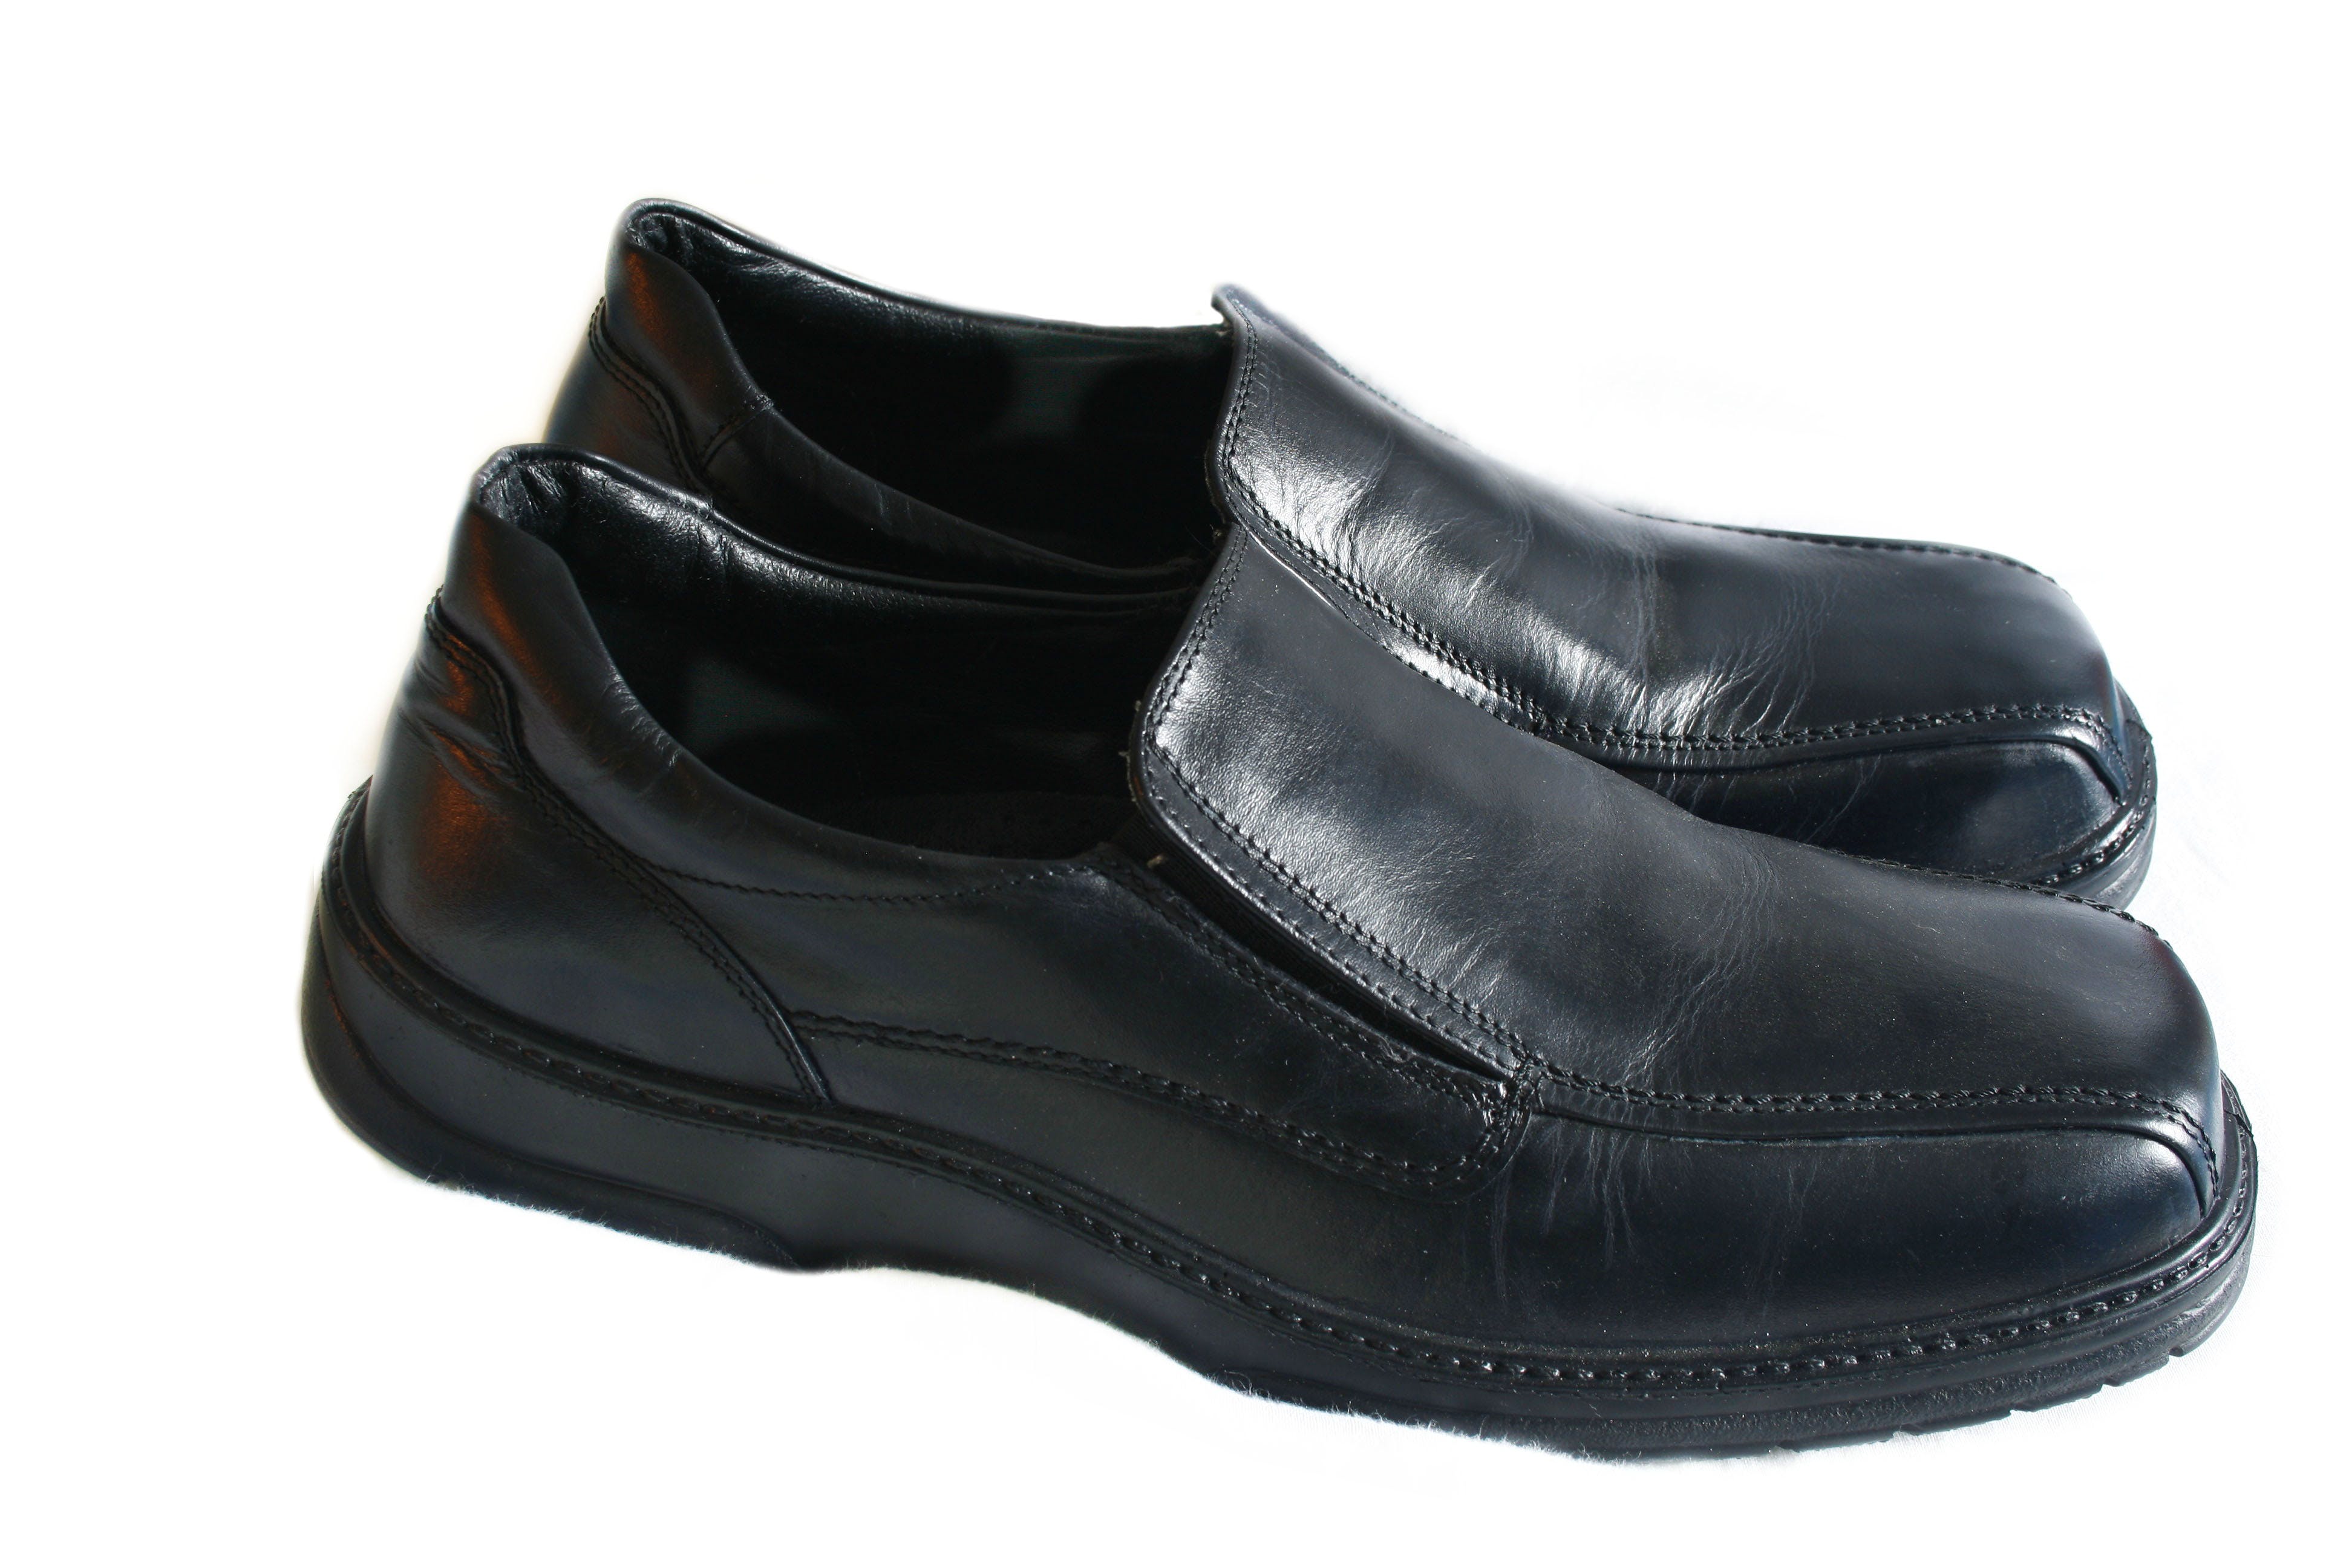 Shoe,Footwear,Black,Product,Walking shoe,Dress shoe,Sneakers,Outdoor shoe,Athletic shoe,Leather